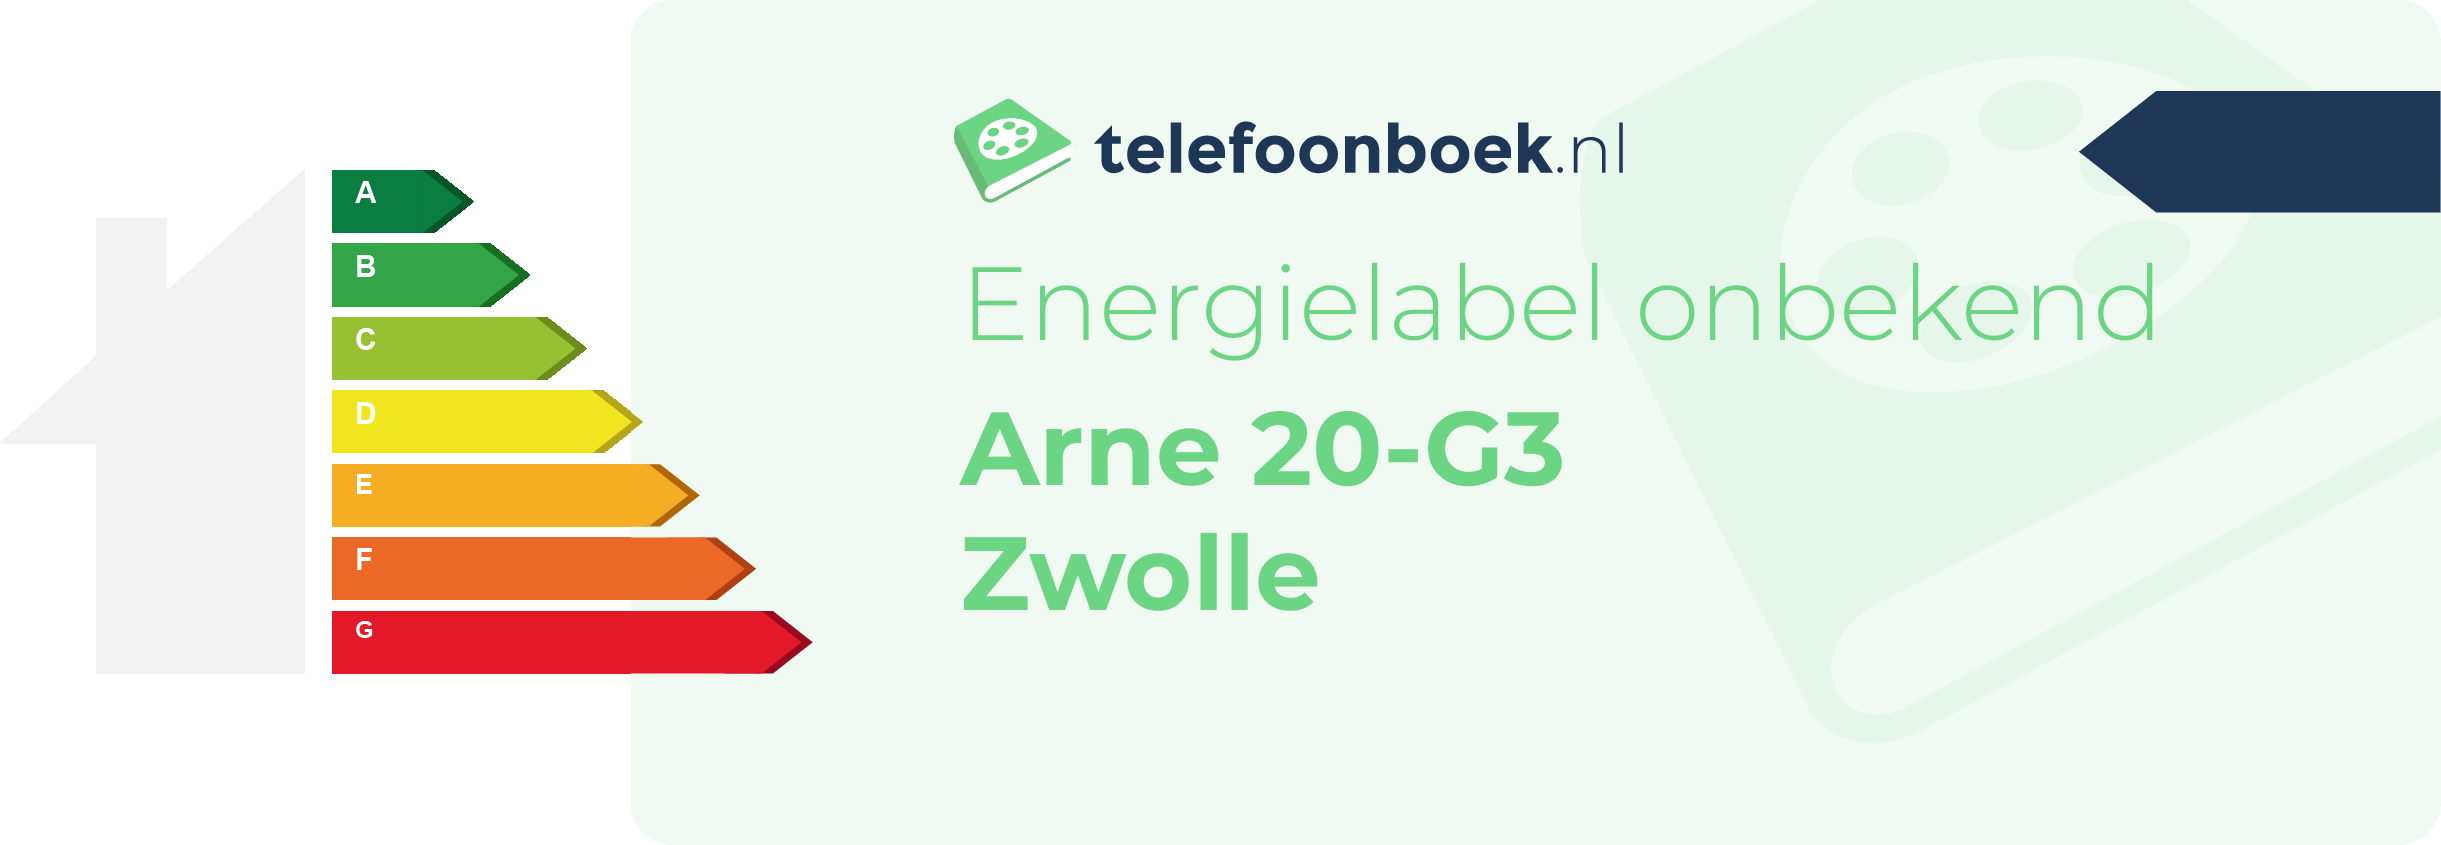 Energielabel Arne 20-G3 Zwolle